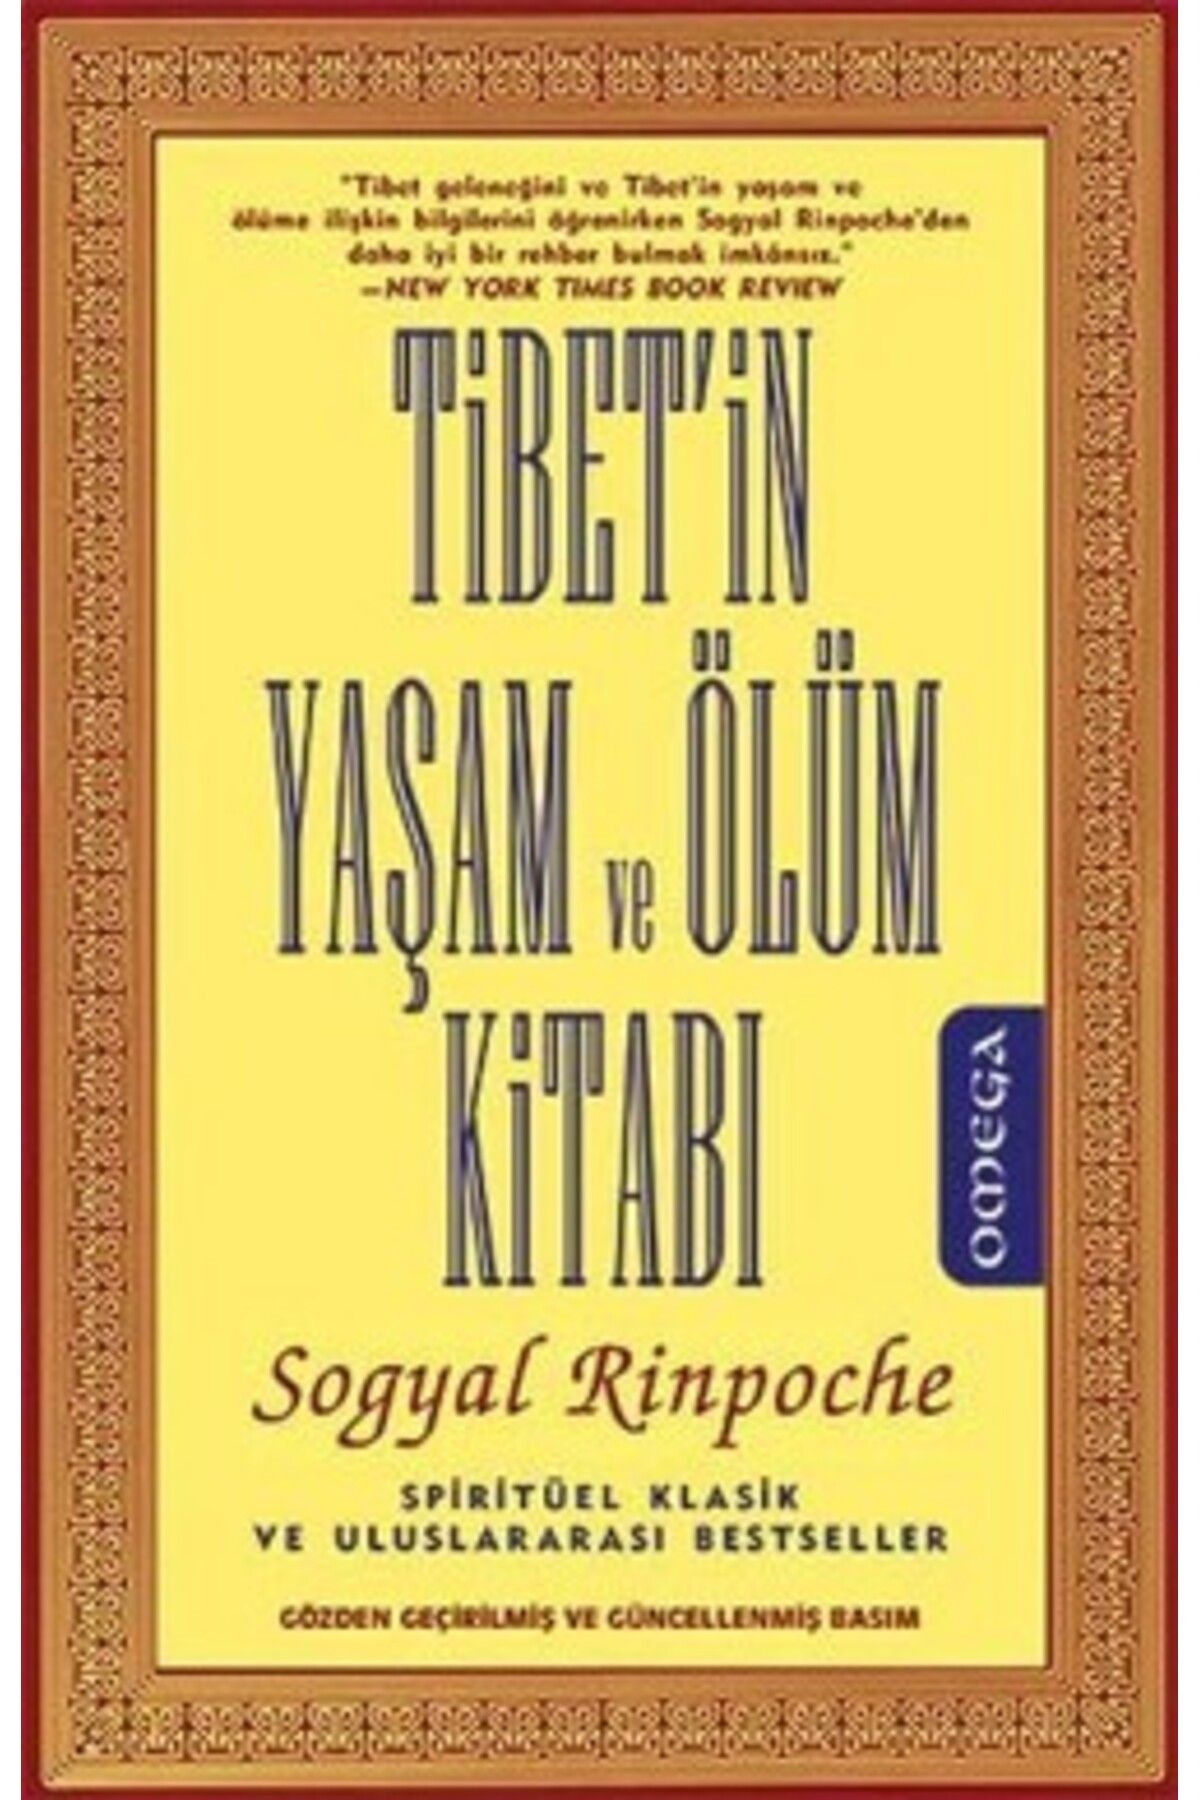 Omega Tibet'in Yaşam ve Ölüm Kitabı-Sogyal Rinpoche